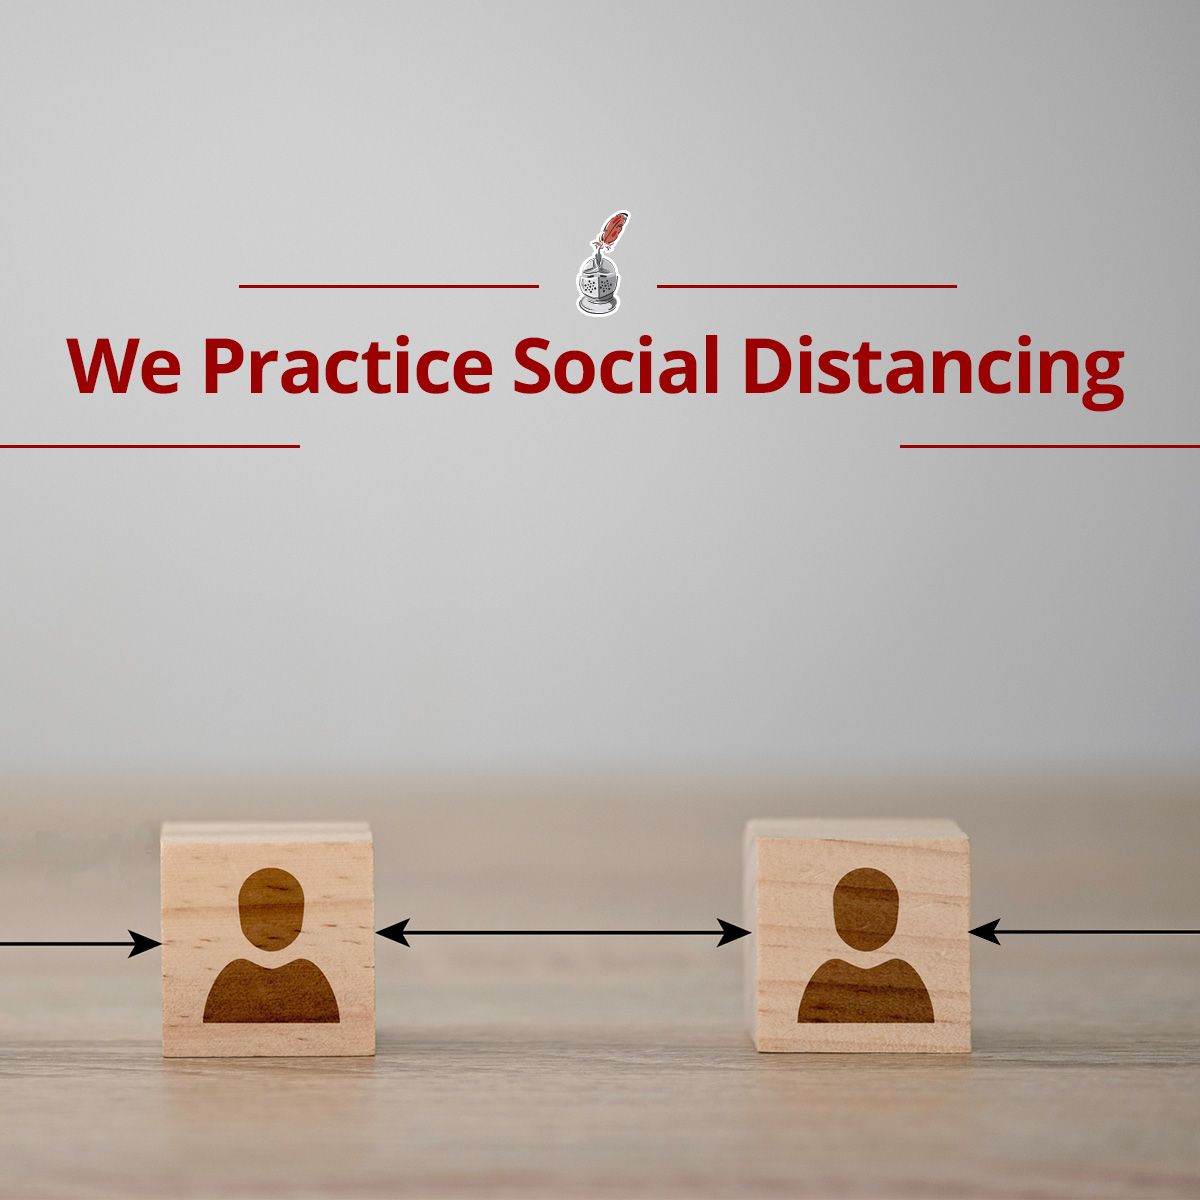 We Practice Social Distancing